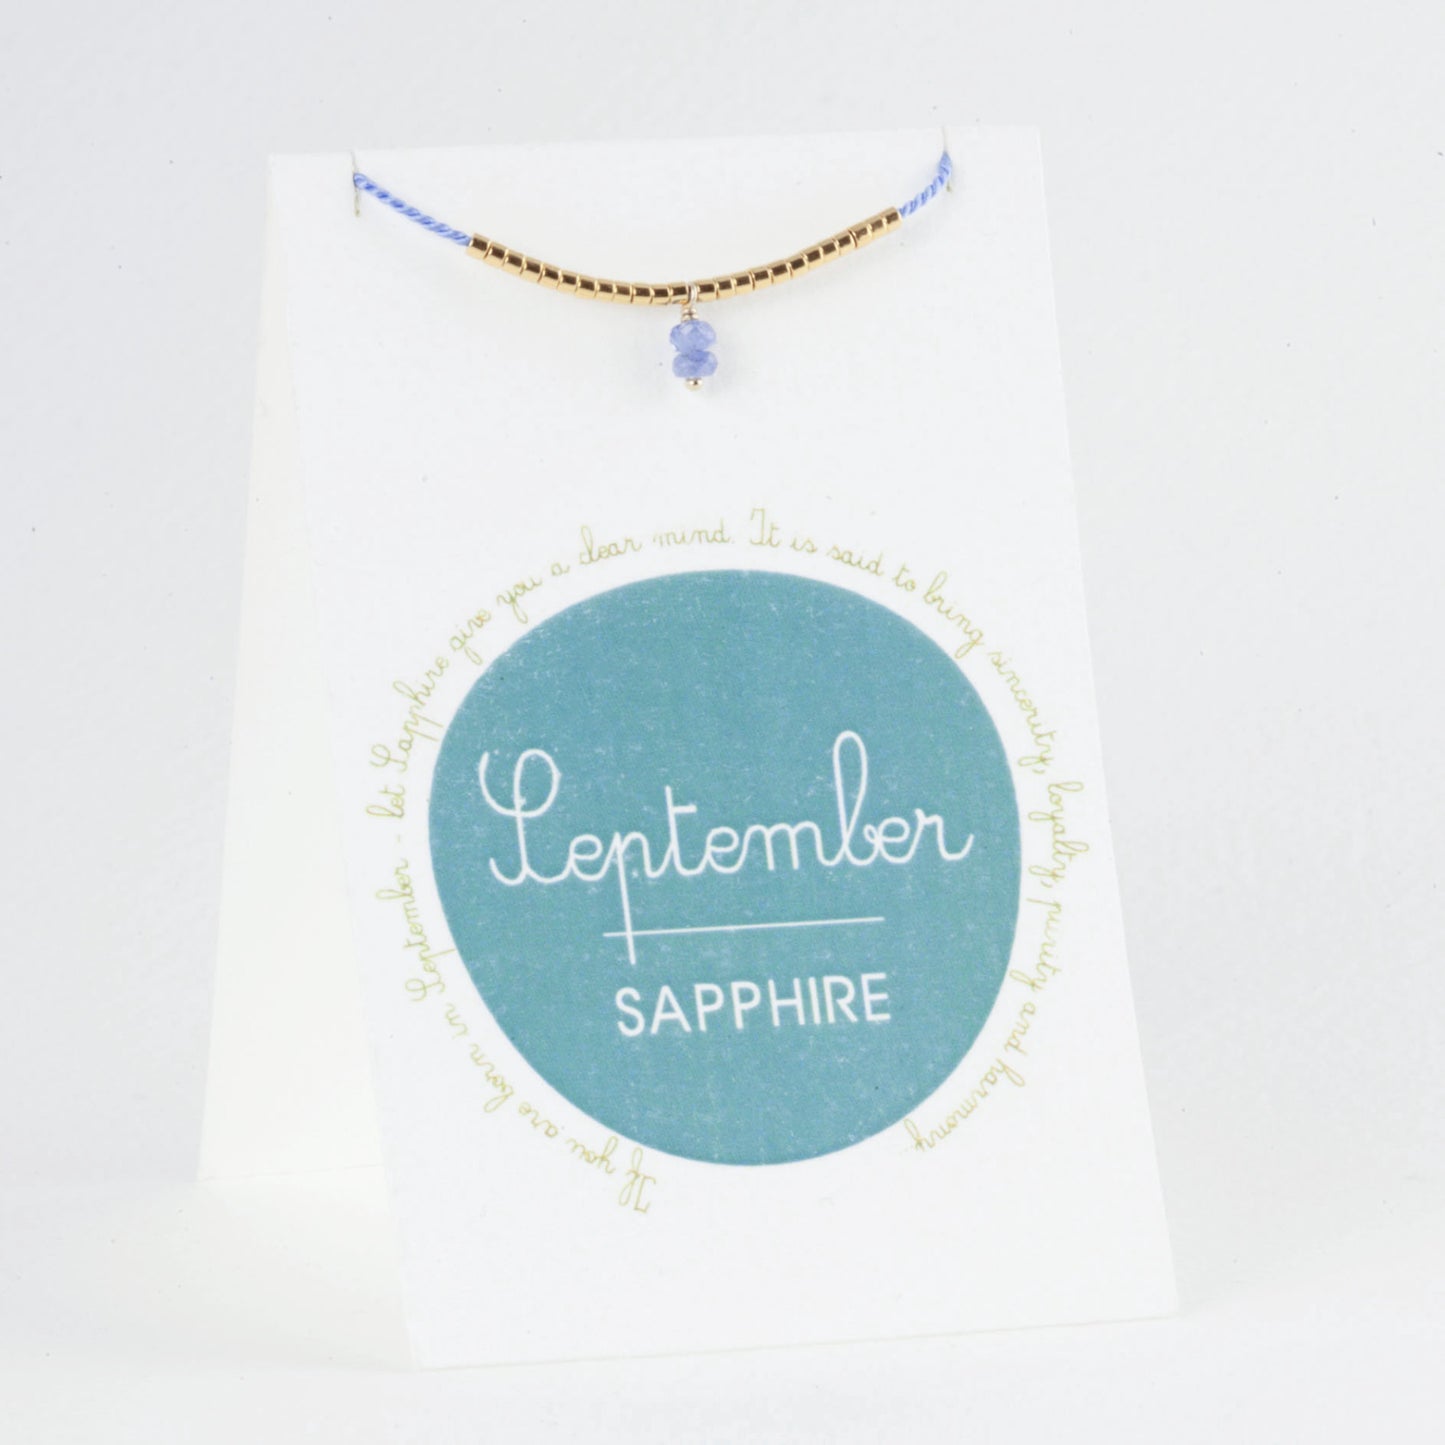 September Birthstone Bracelet, Sapphire